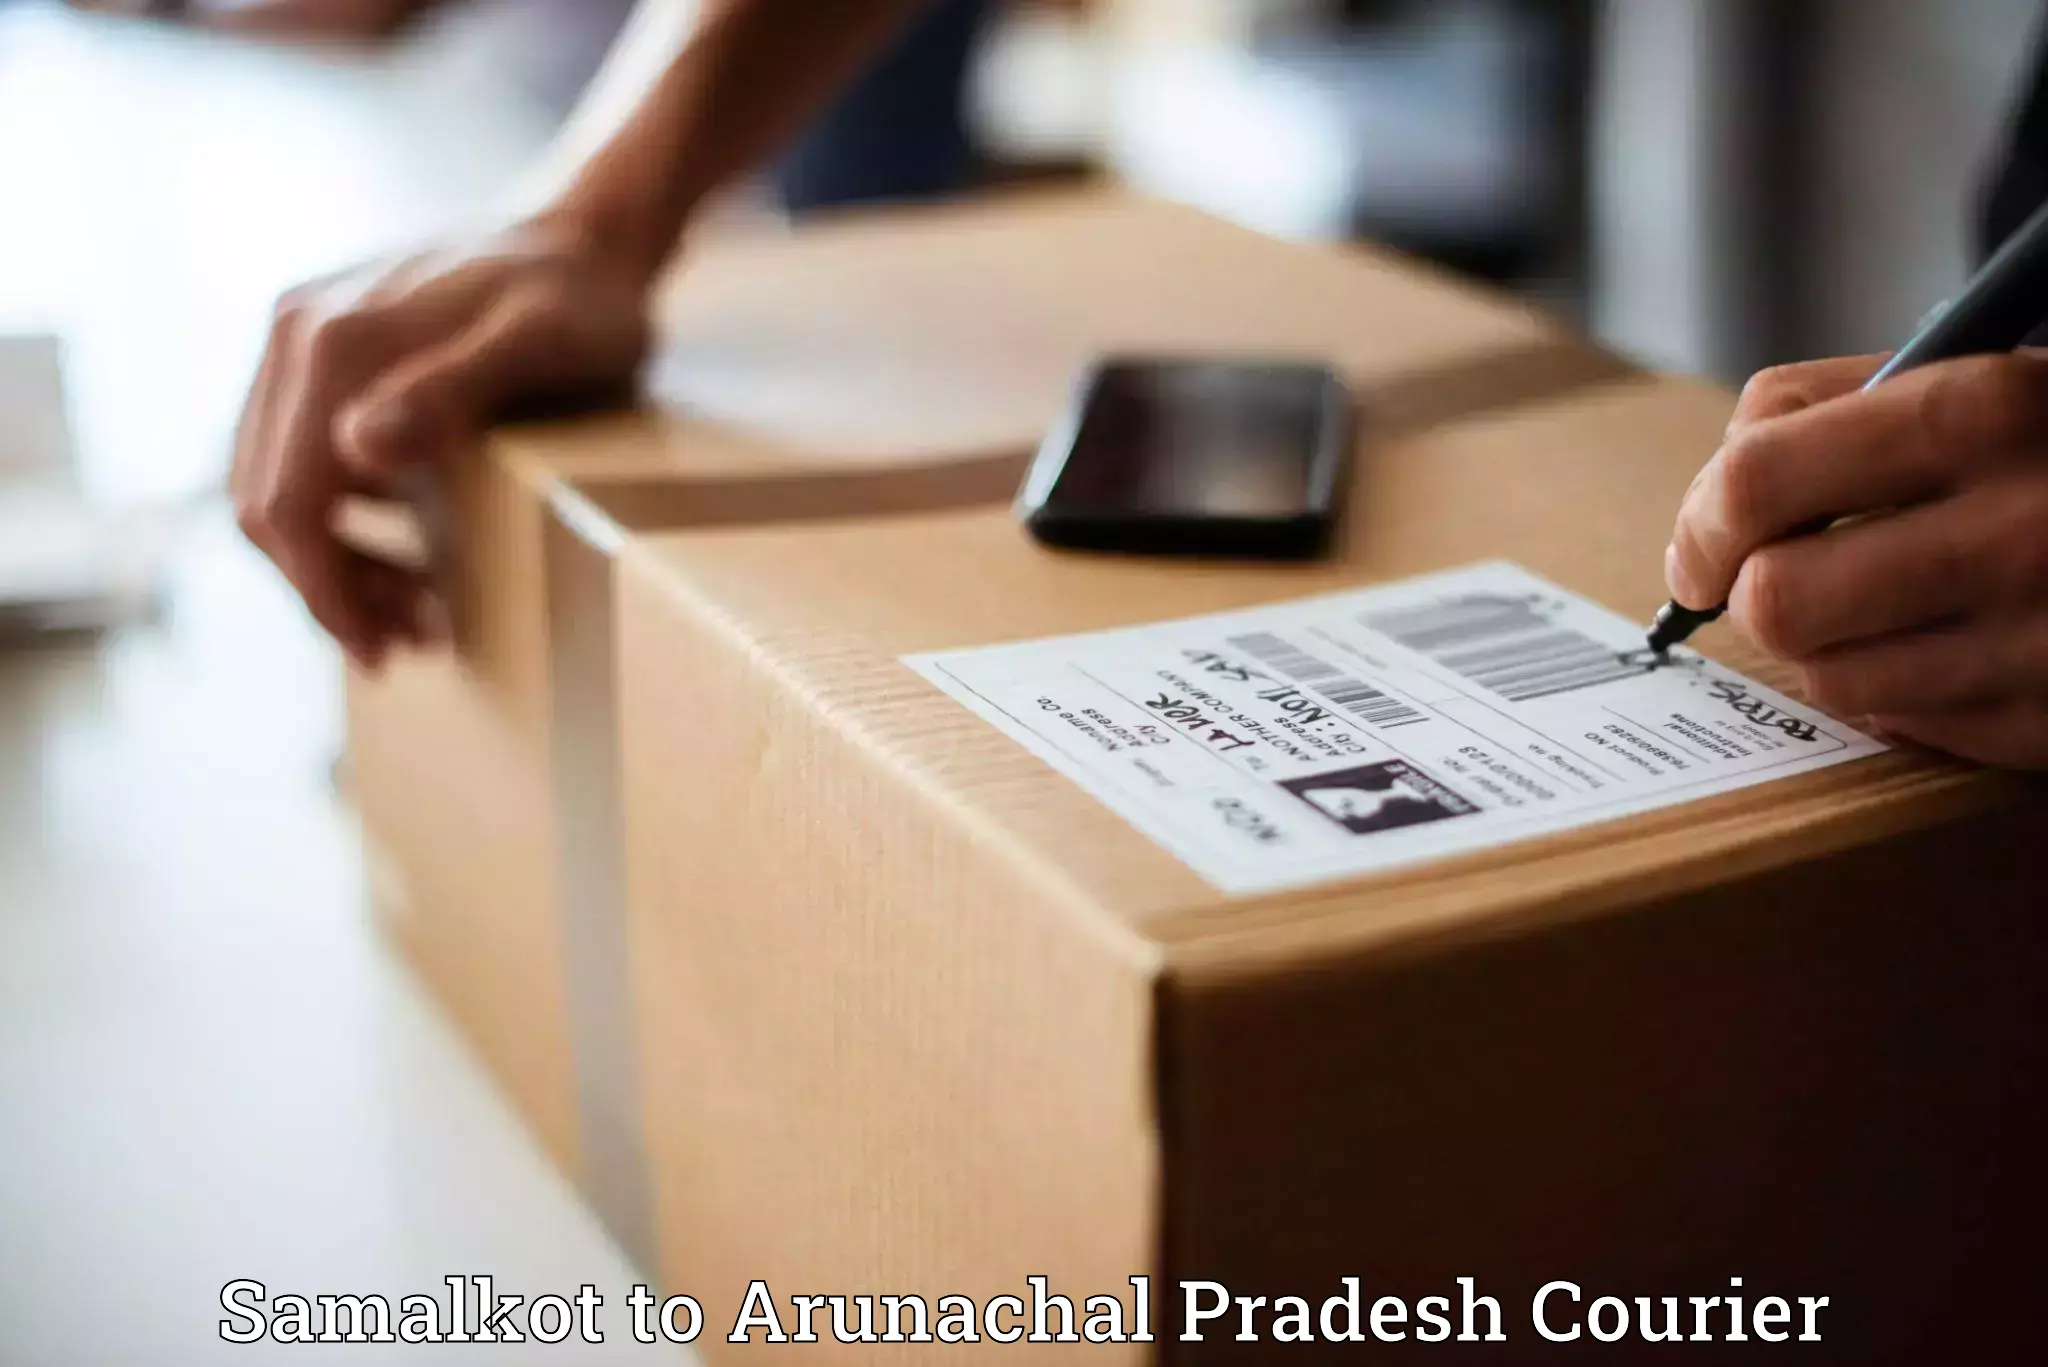 International courier networks Samalkot to Arunachal Pradesh